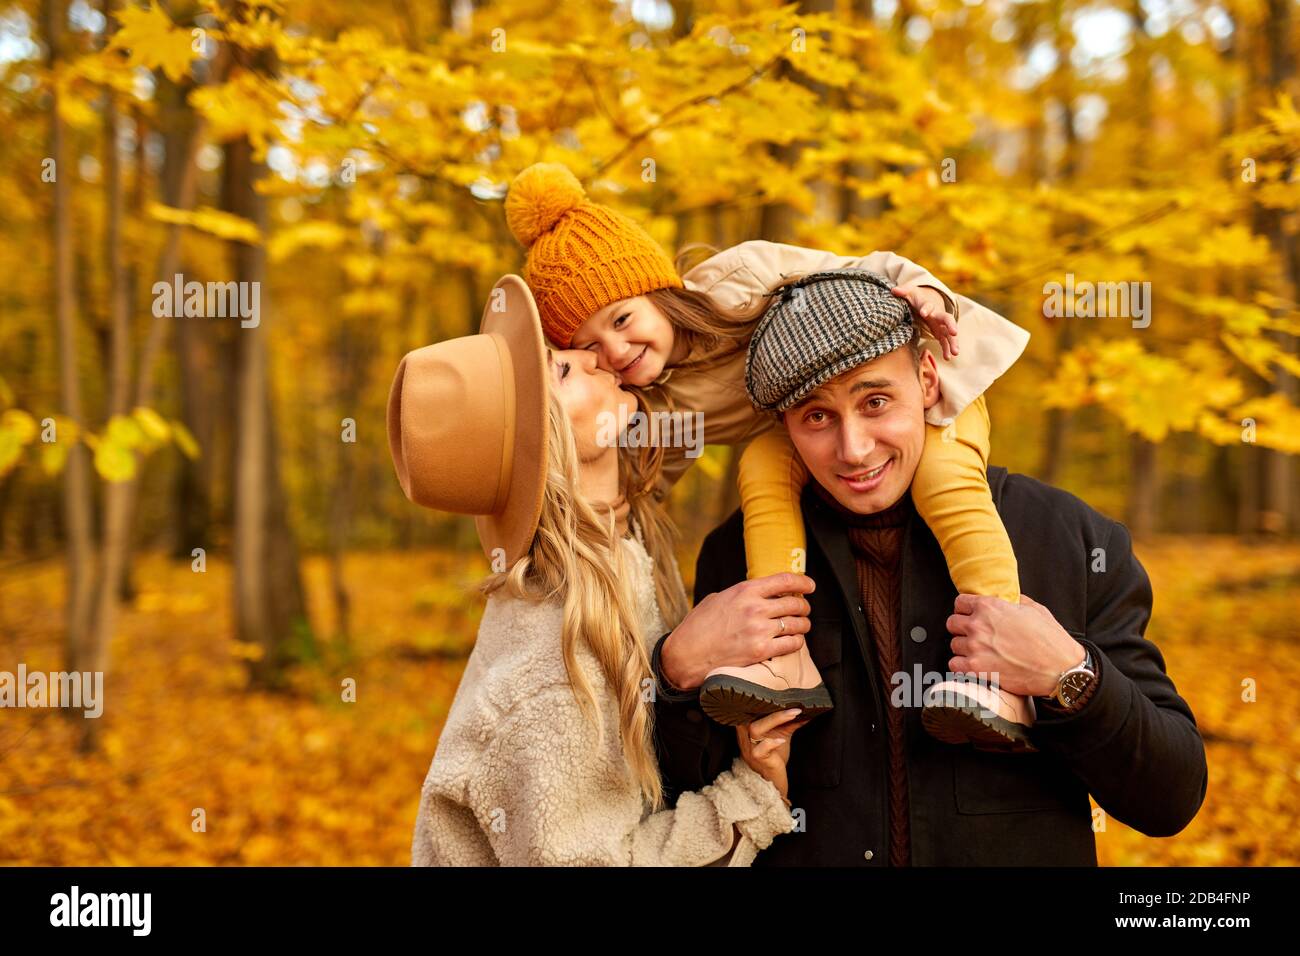 Glückliche Familie haben Spaß im Herbst Park Natur, kaukasischen Paar und Kind umarmt, küssen, zum Ausdruck bringen Liebe zueinander. In Mänteln im Freien Stockfoto